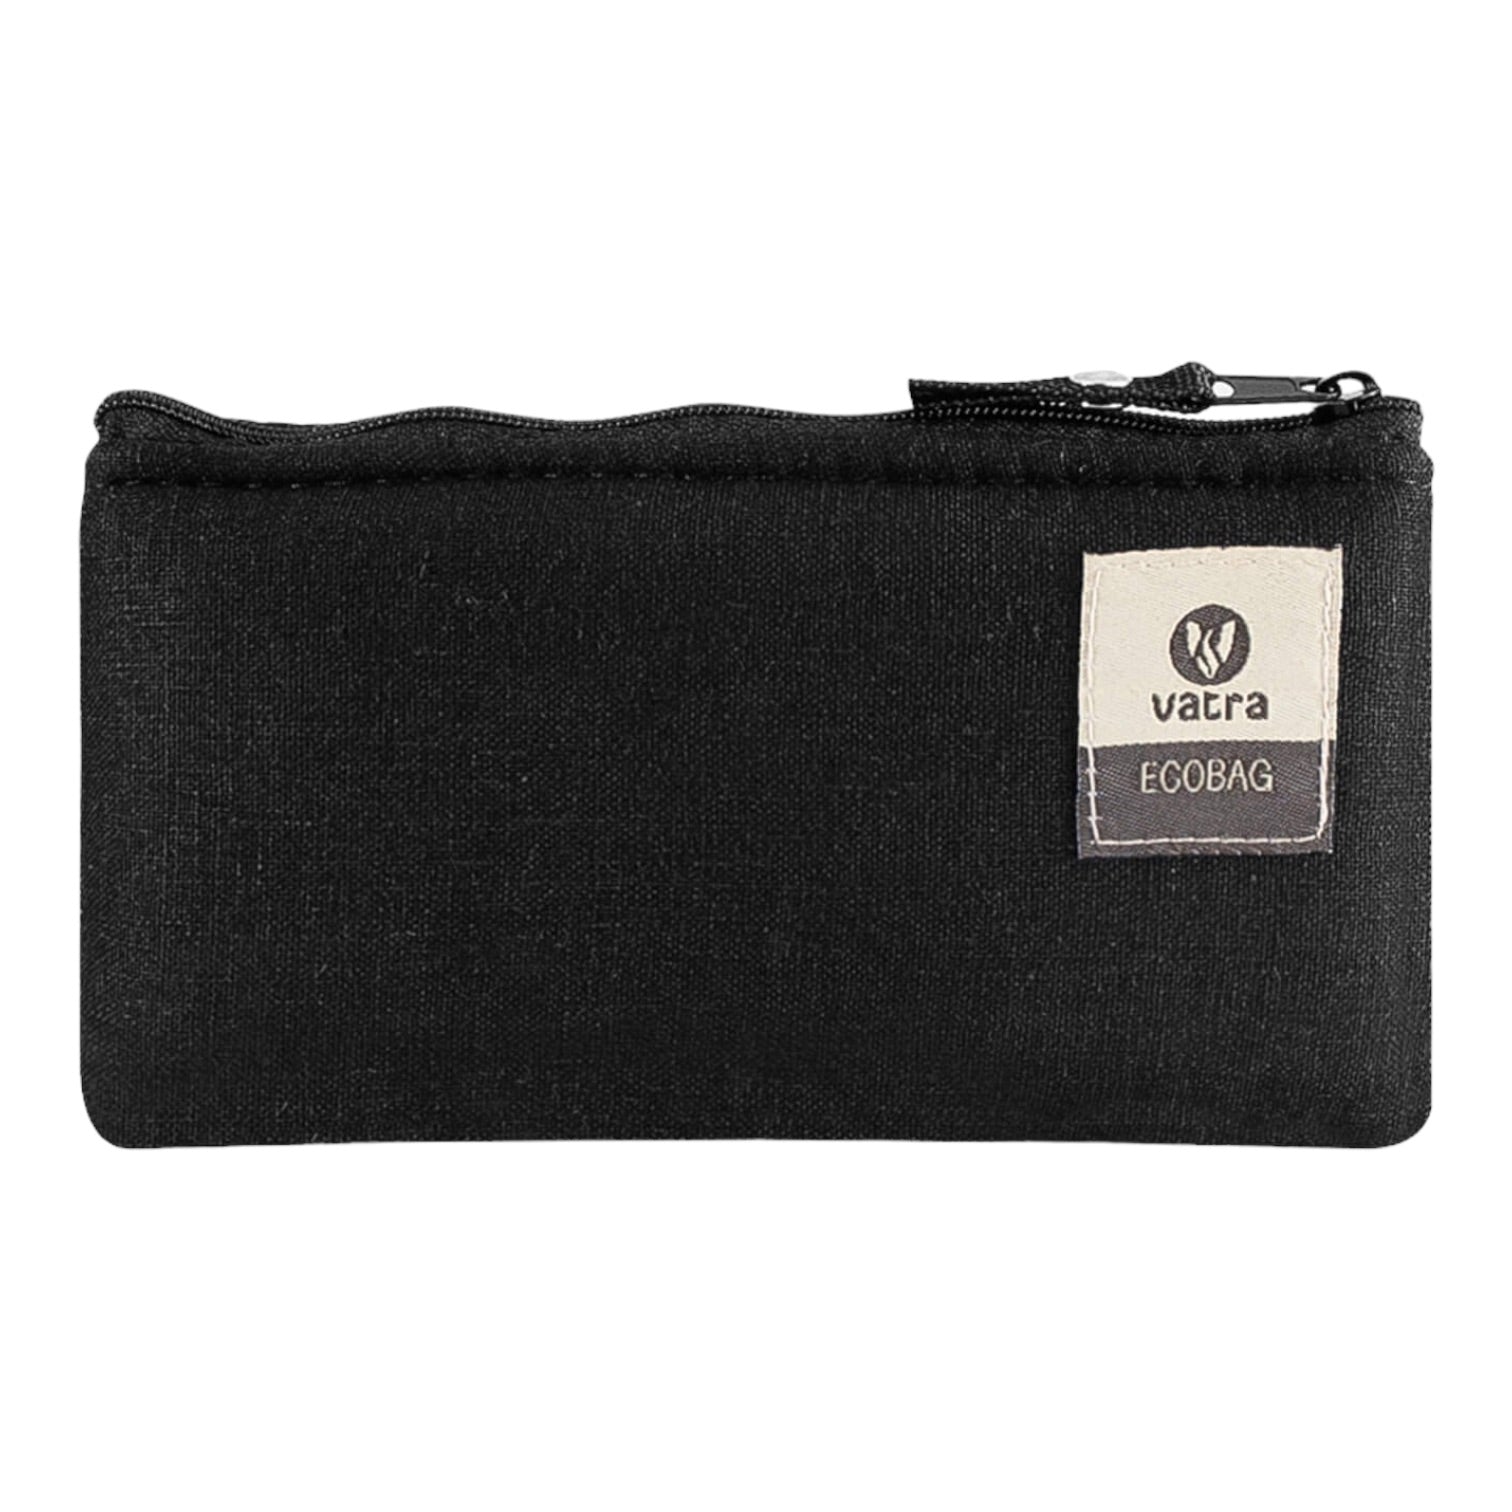 Vatra - 5.5" Zipper Bag